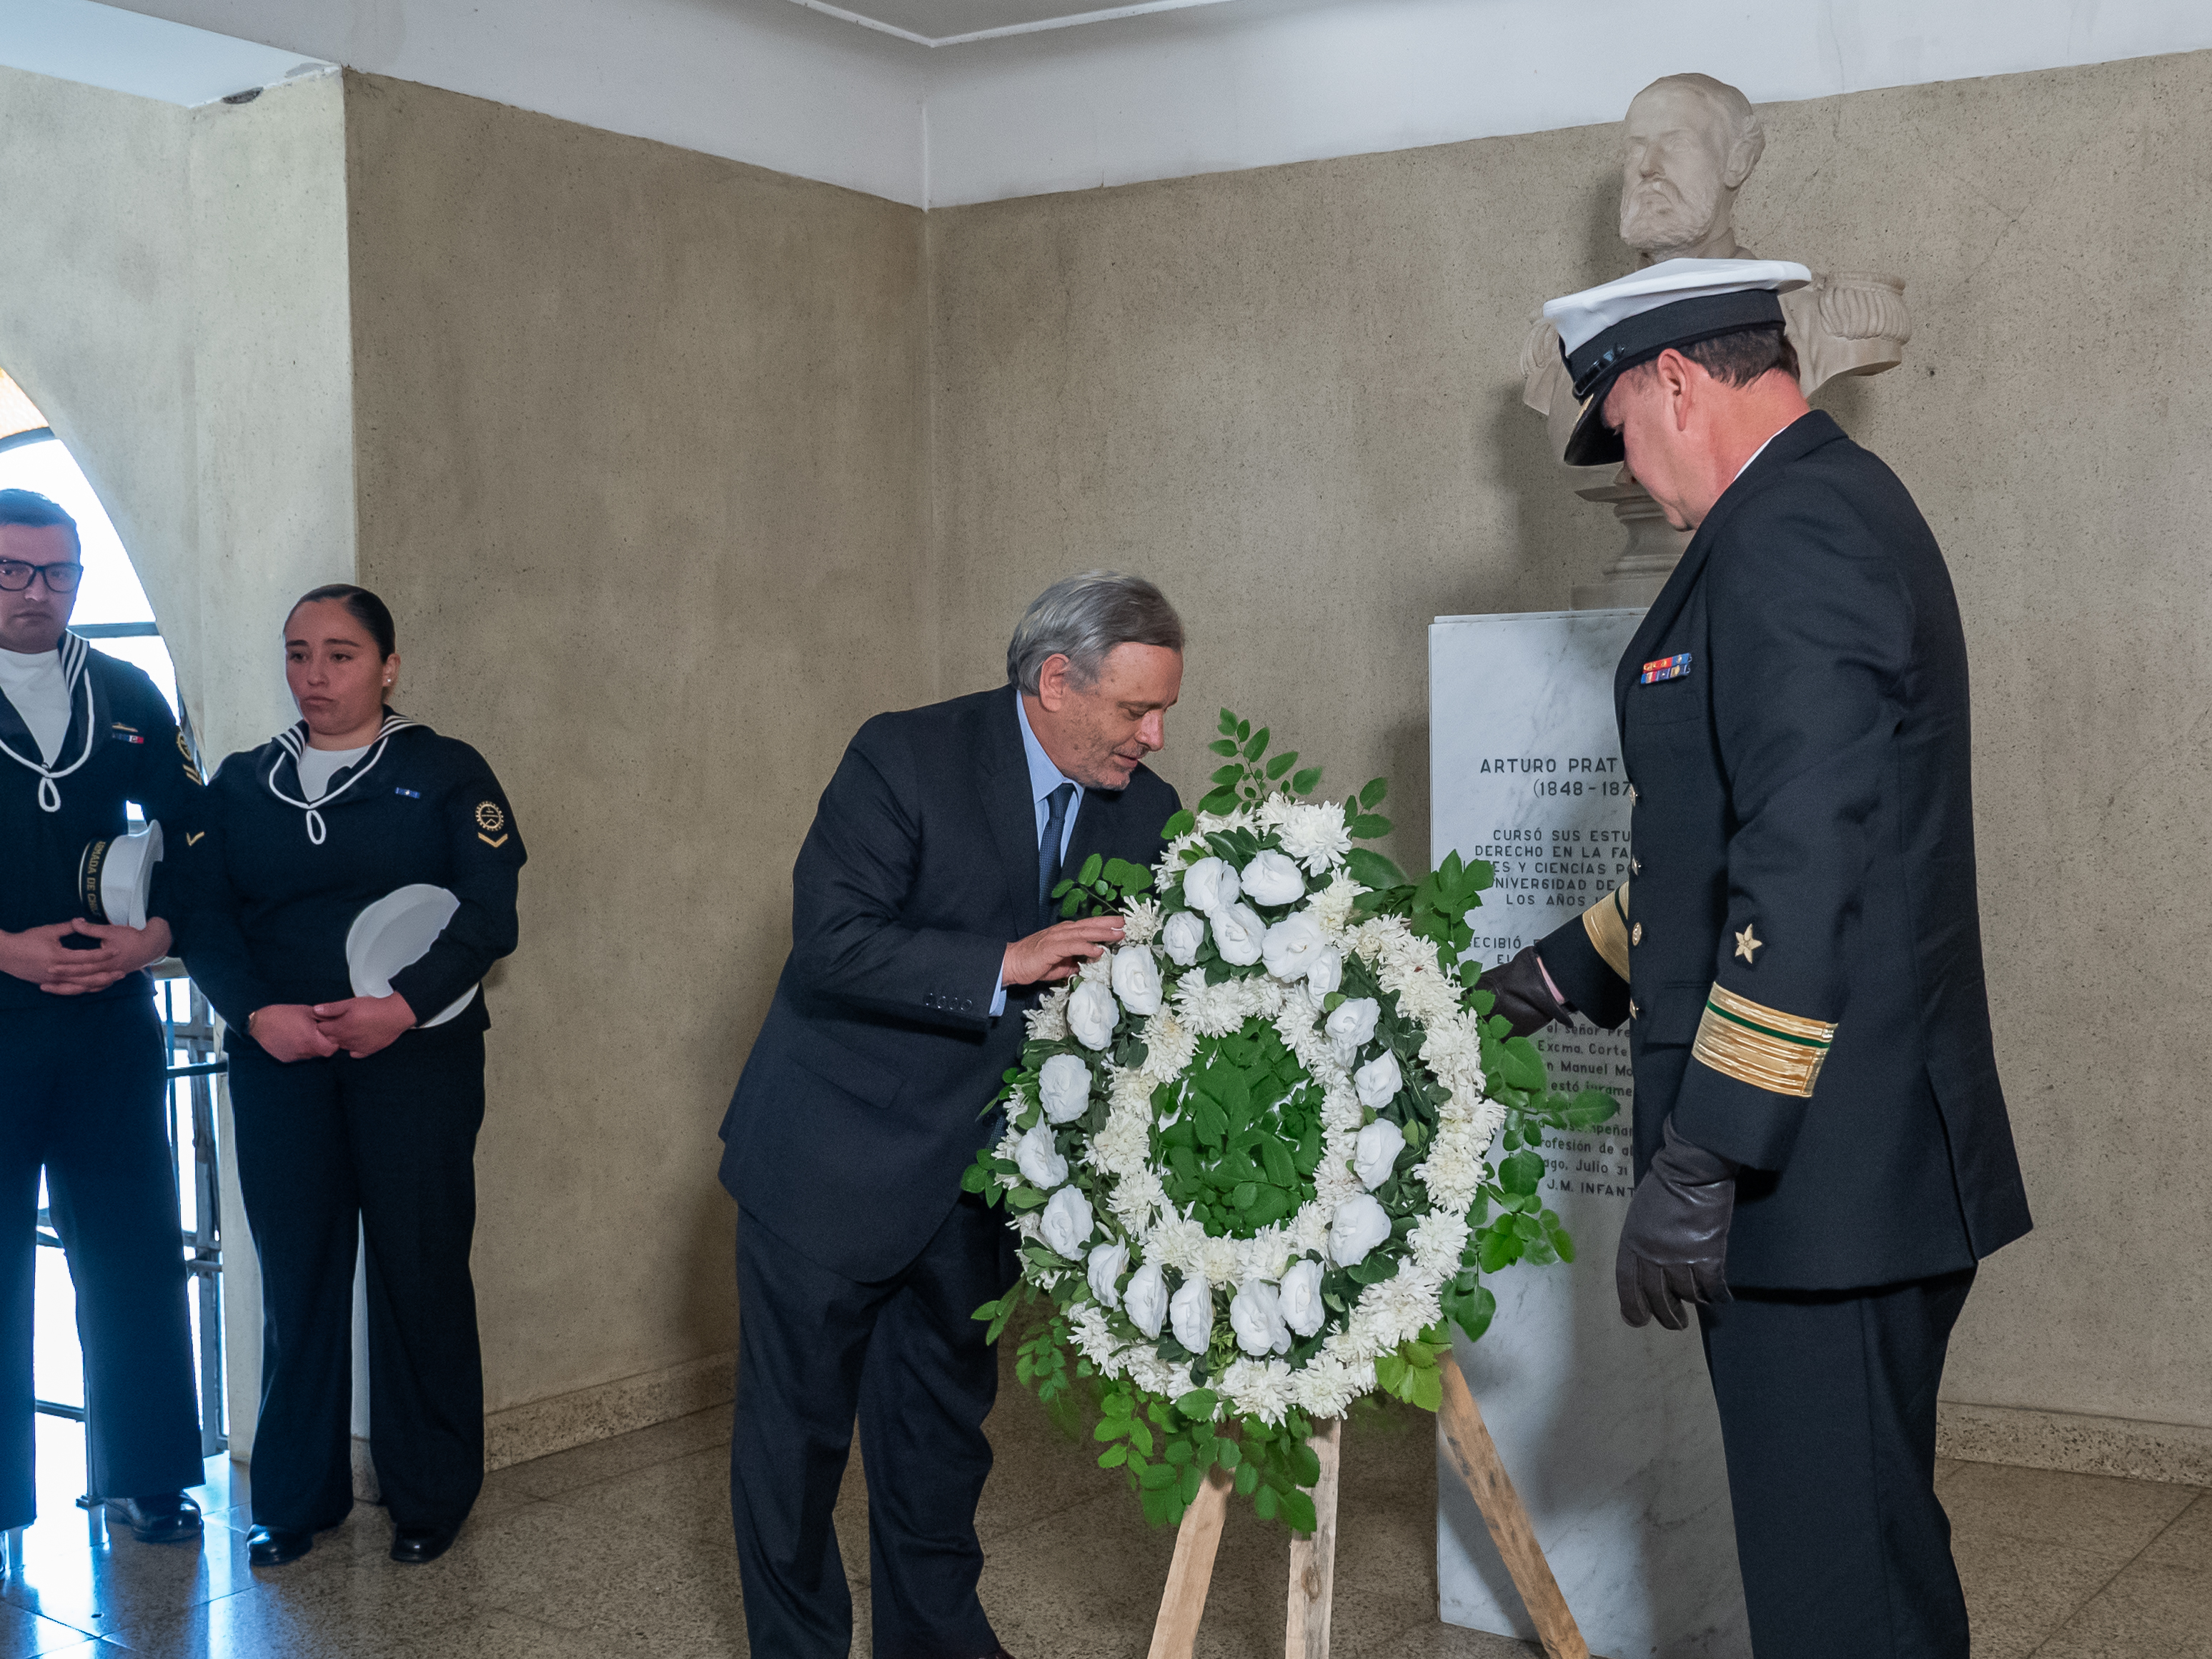 Las autoridades que encabezaron la actividad dejaron una ofrenda floral frente al busto de Arturo Prat, ubicado en el edificio de Pío Nono.